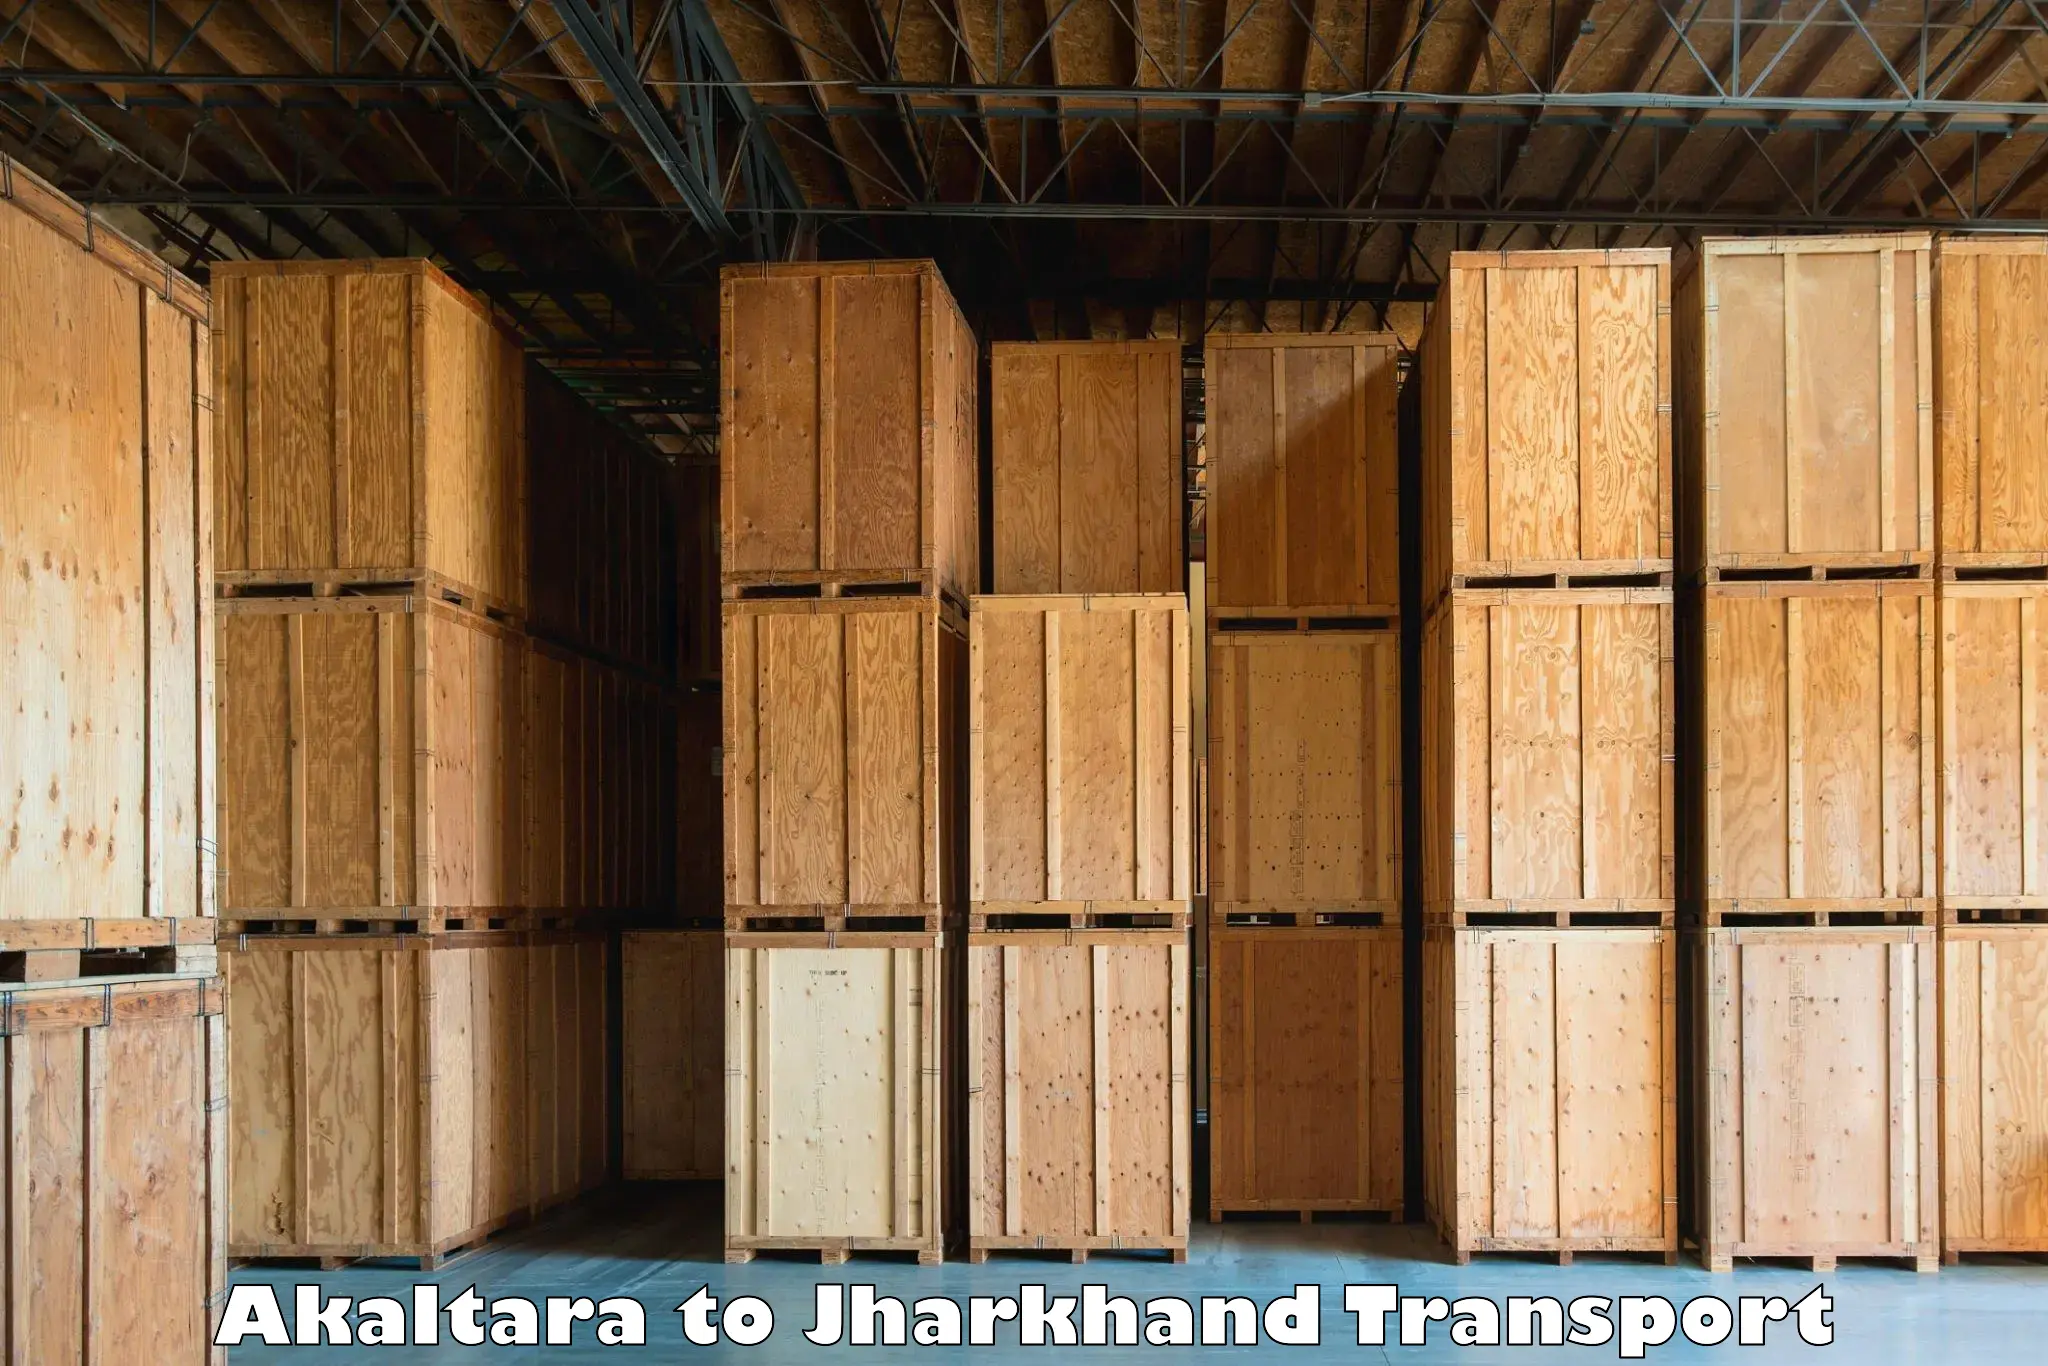 Nearest transport service Akaltara to Shikaripara